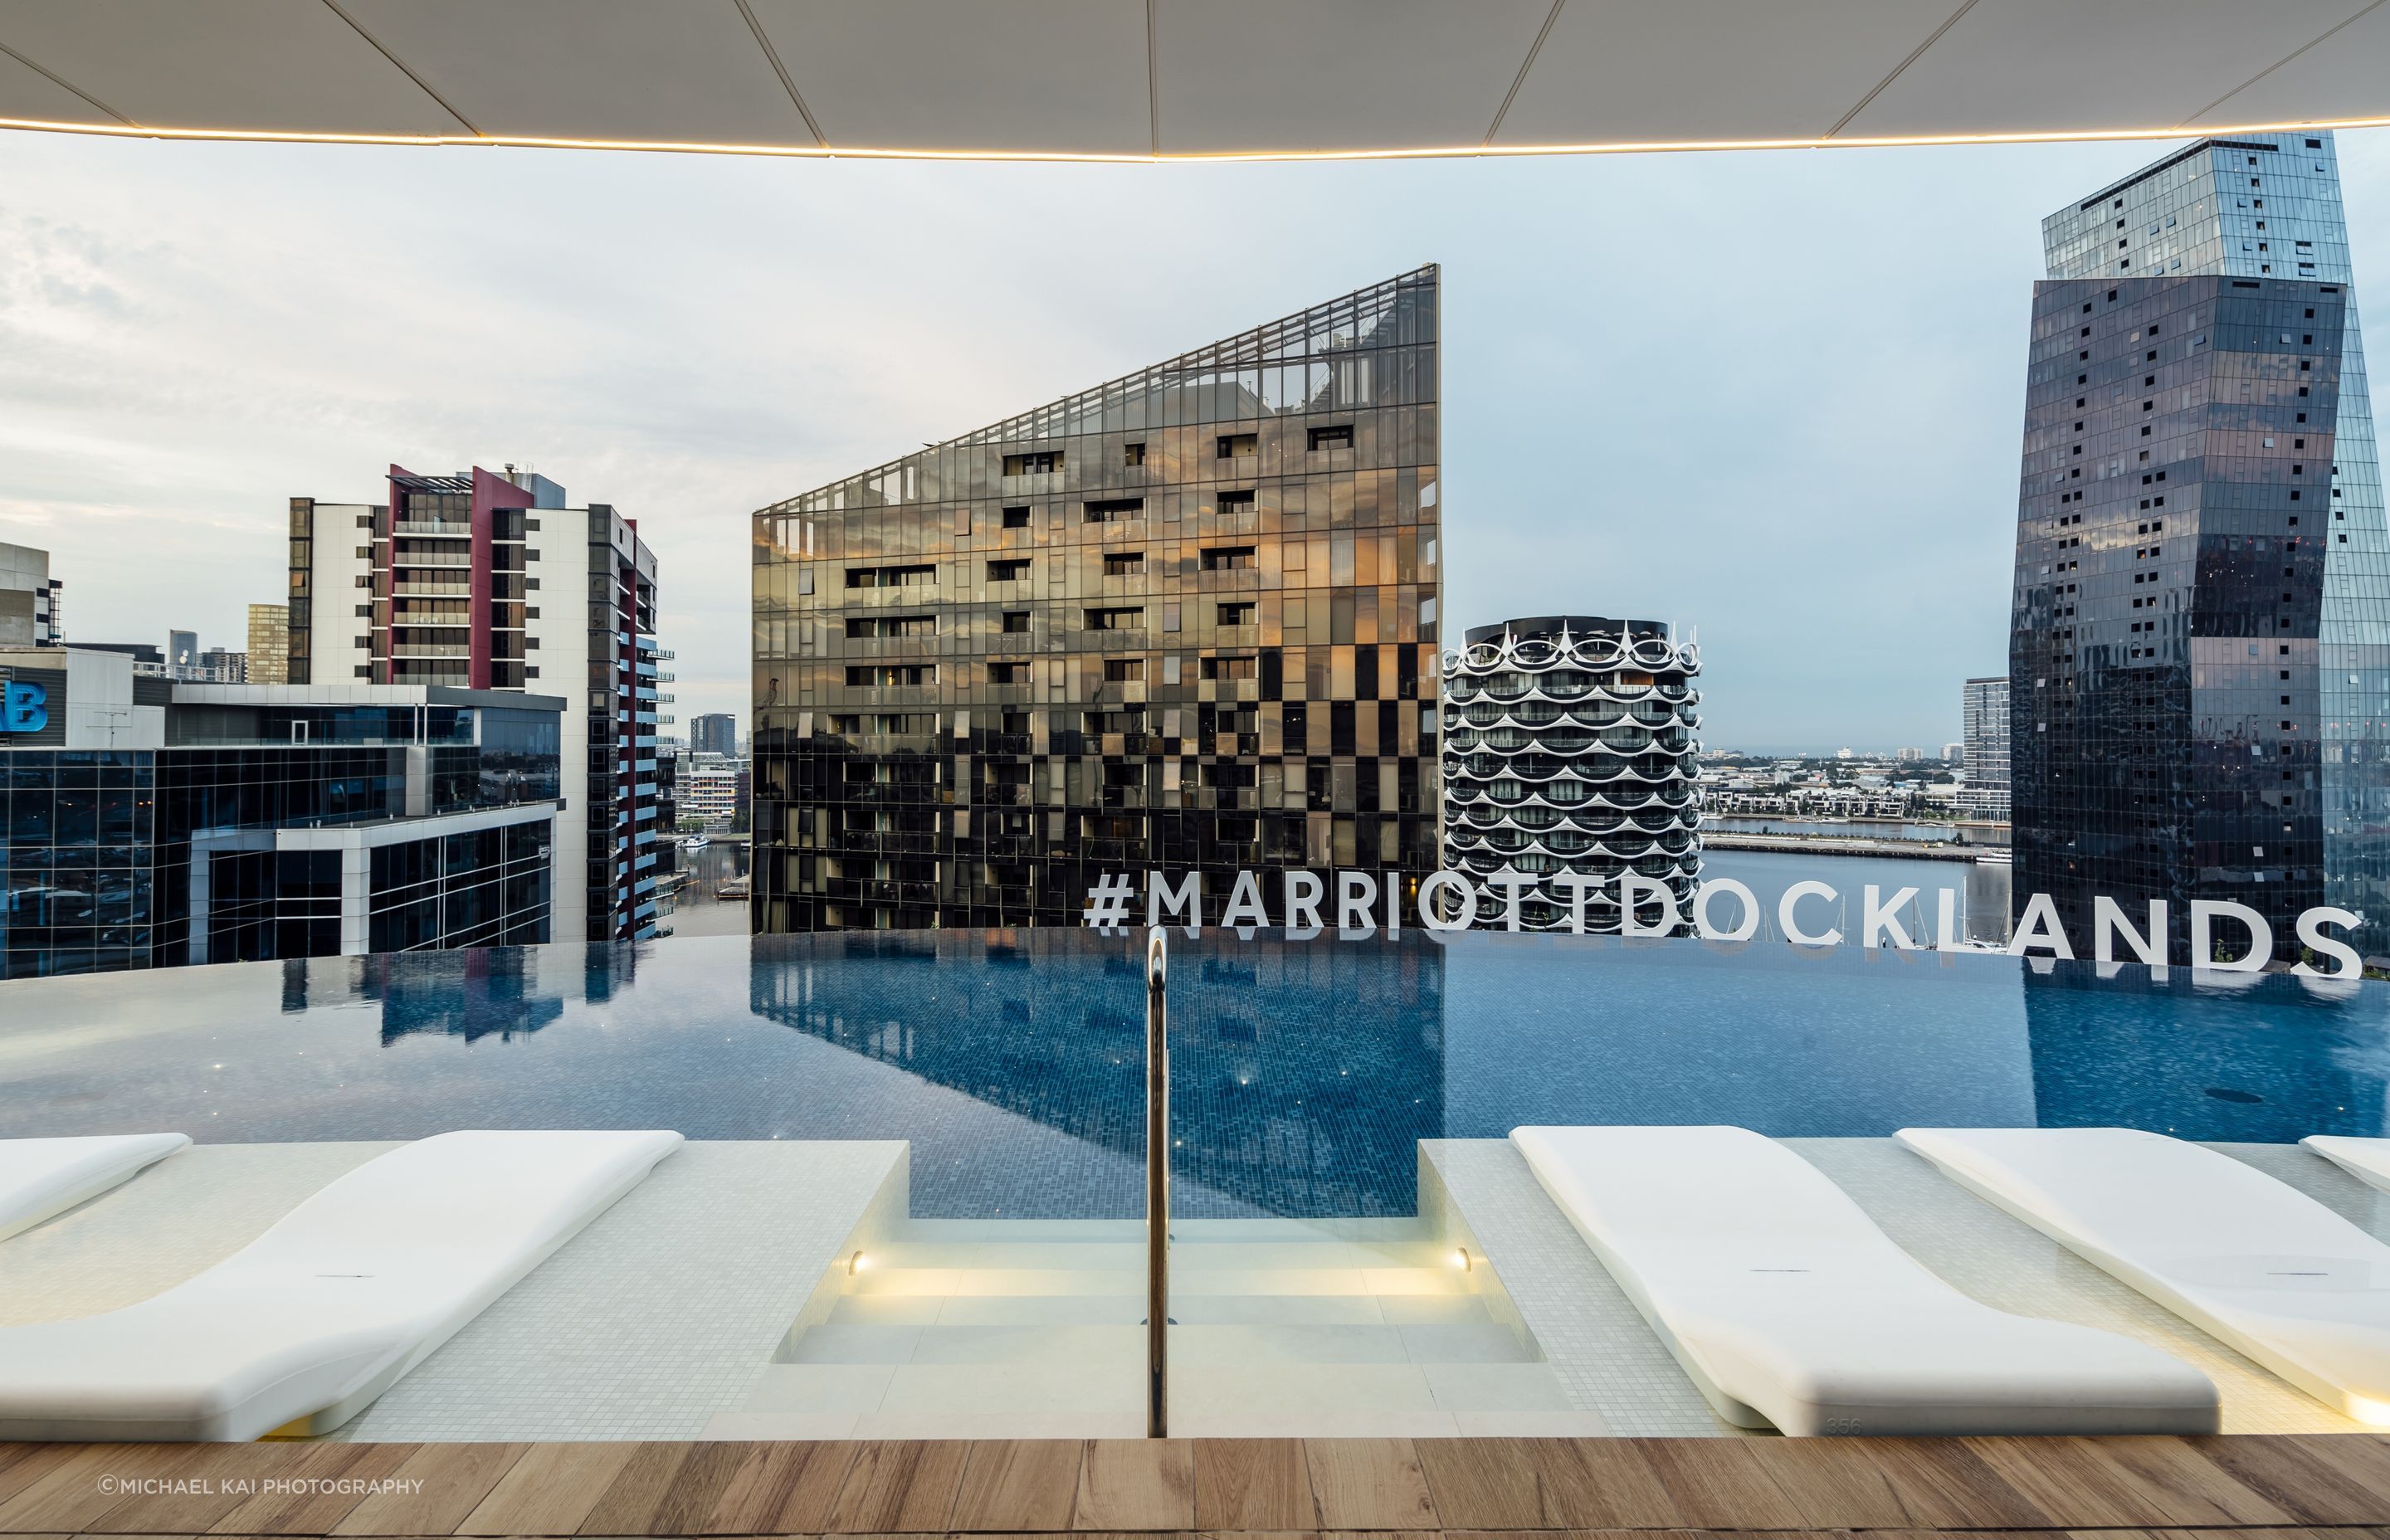 Marriot Docklands